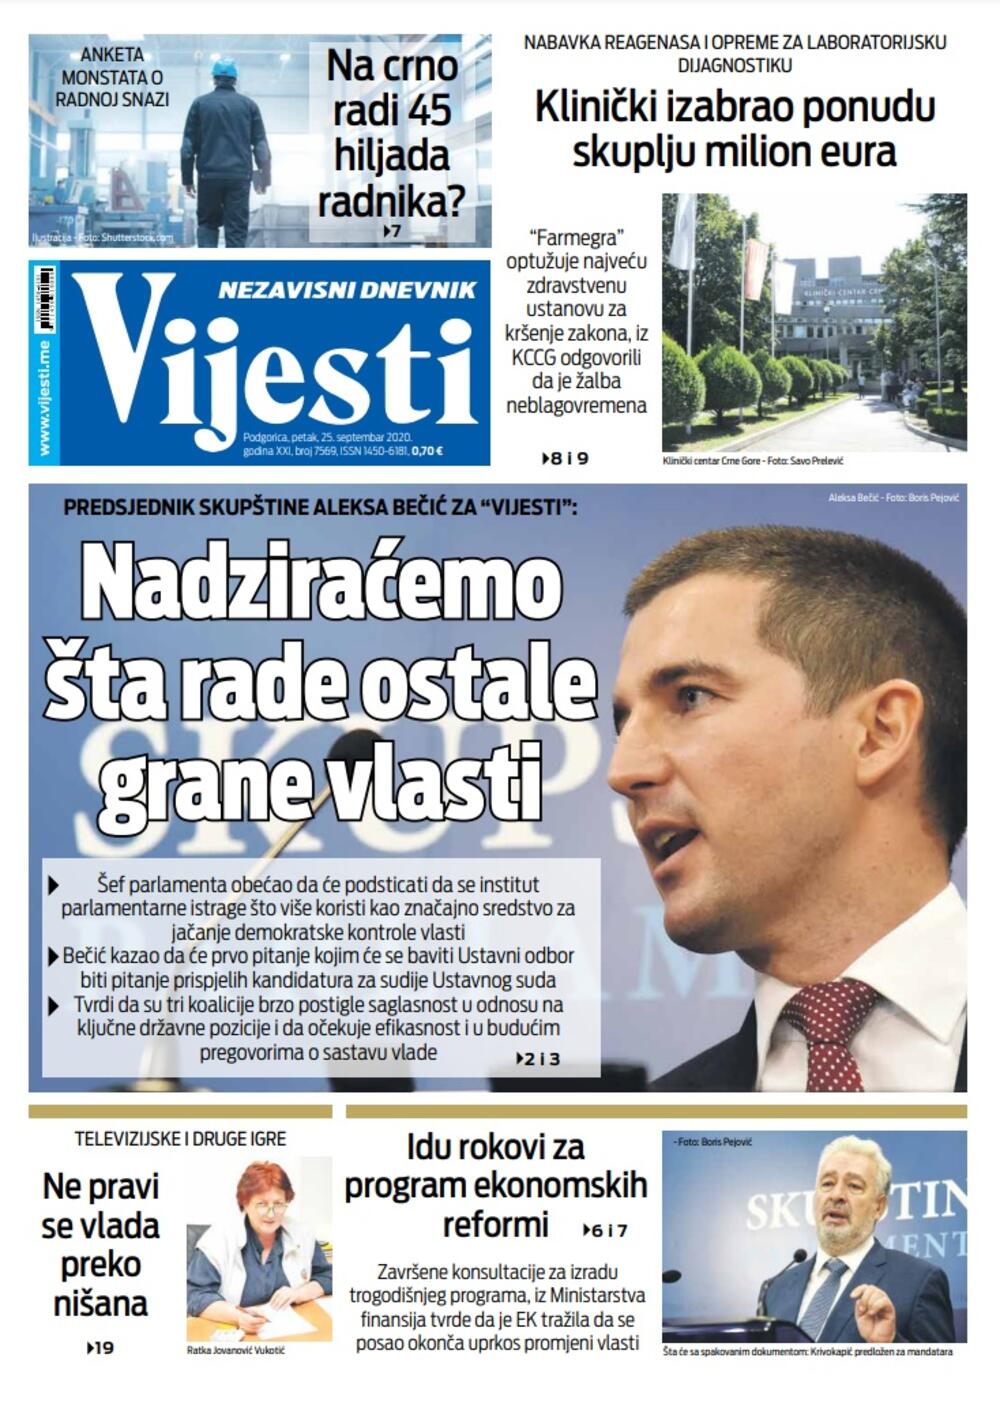 Naslovna strana "Vijesti" za 25. septembar, Foto: Vijesti